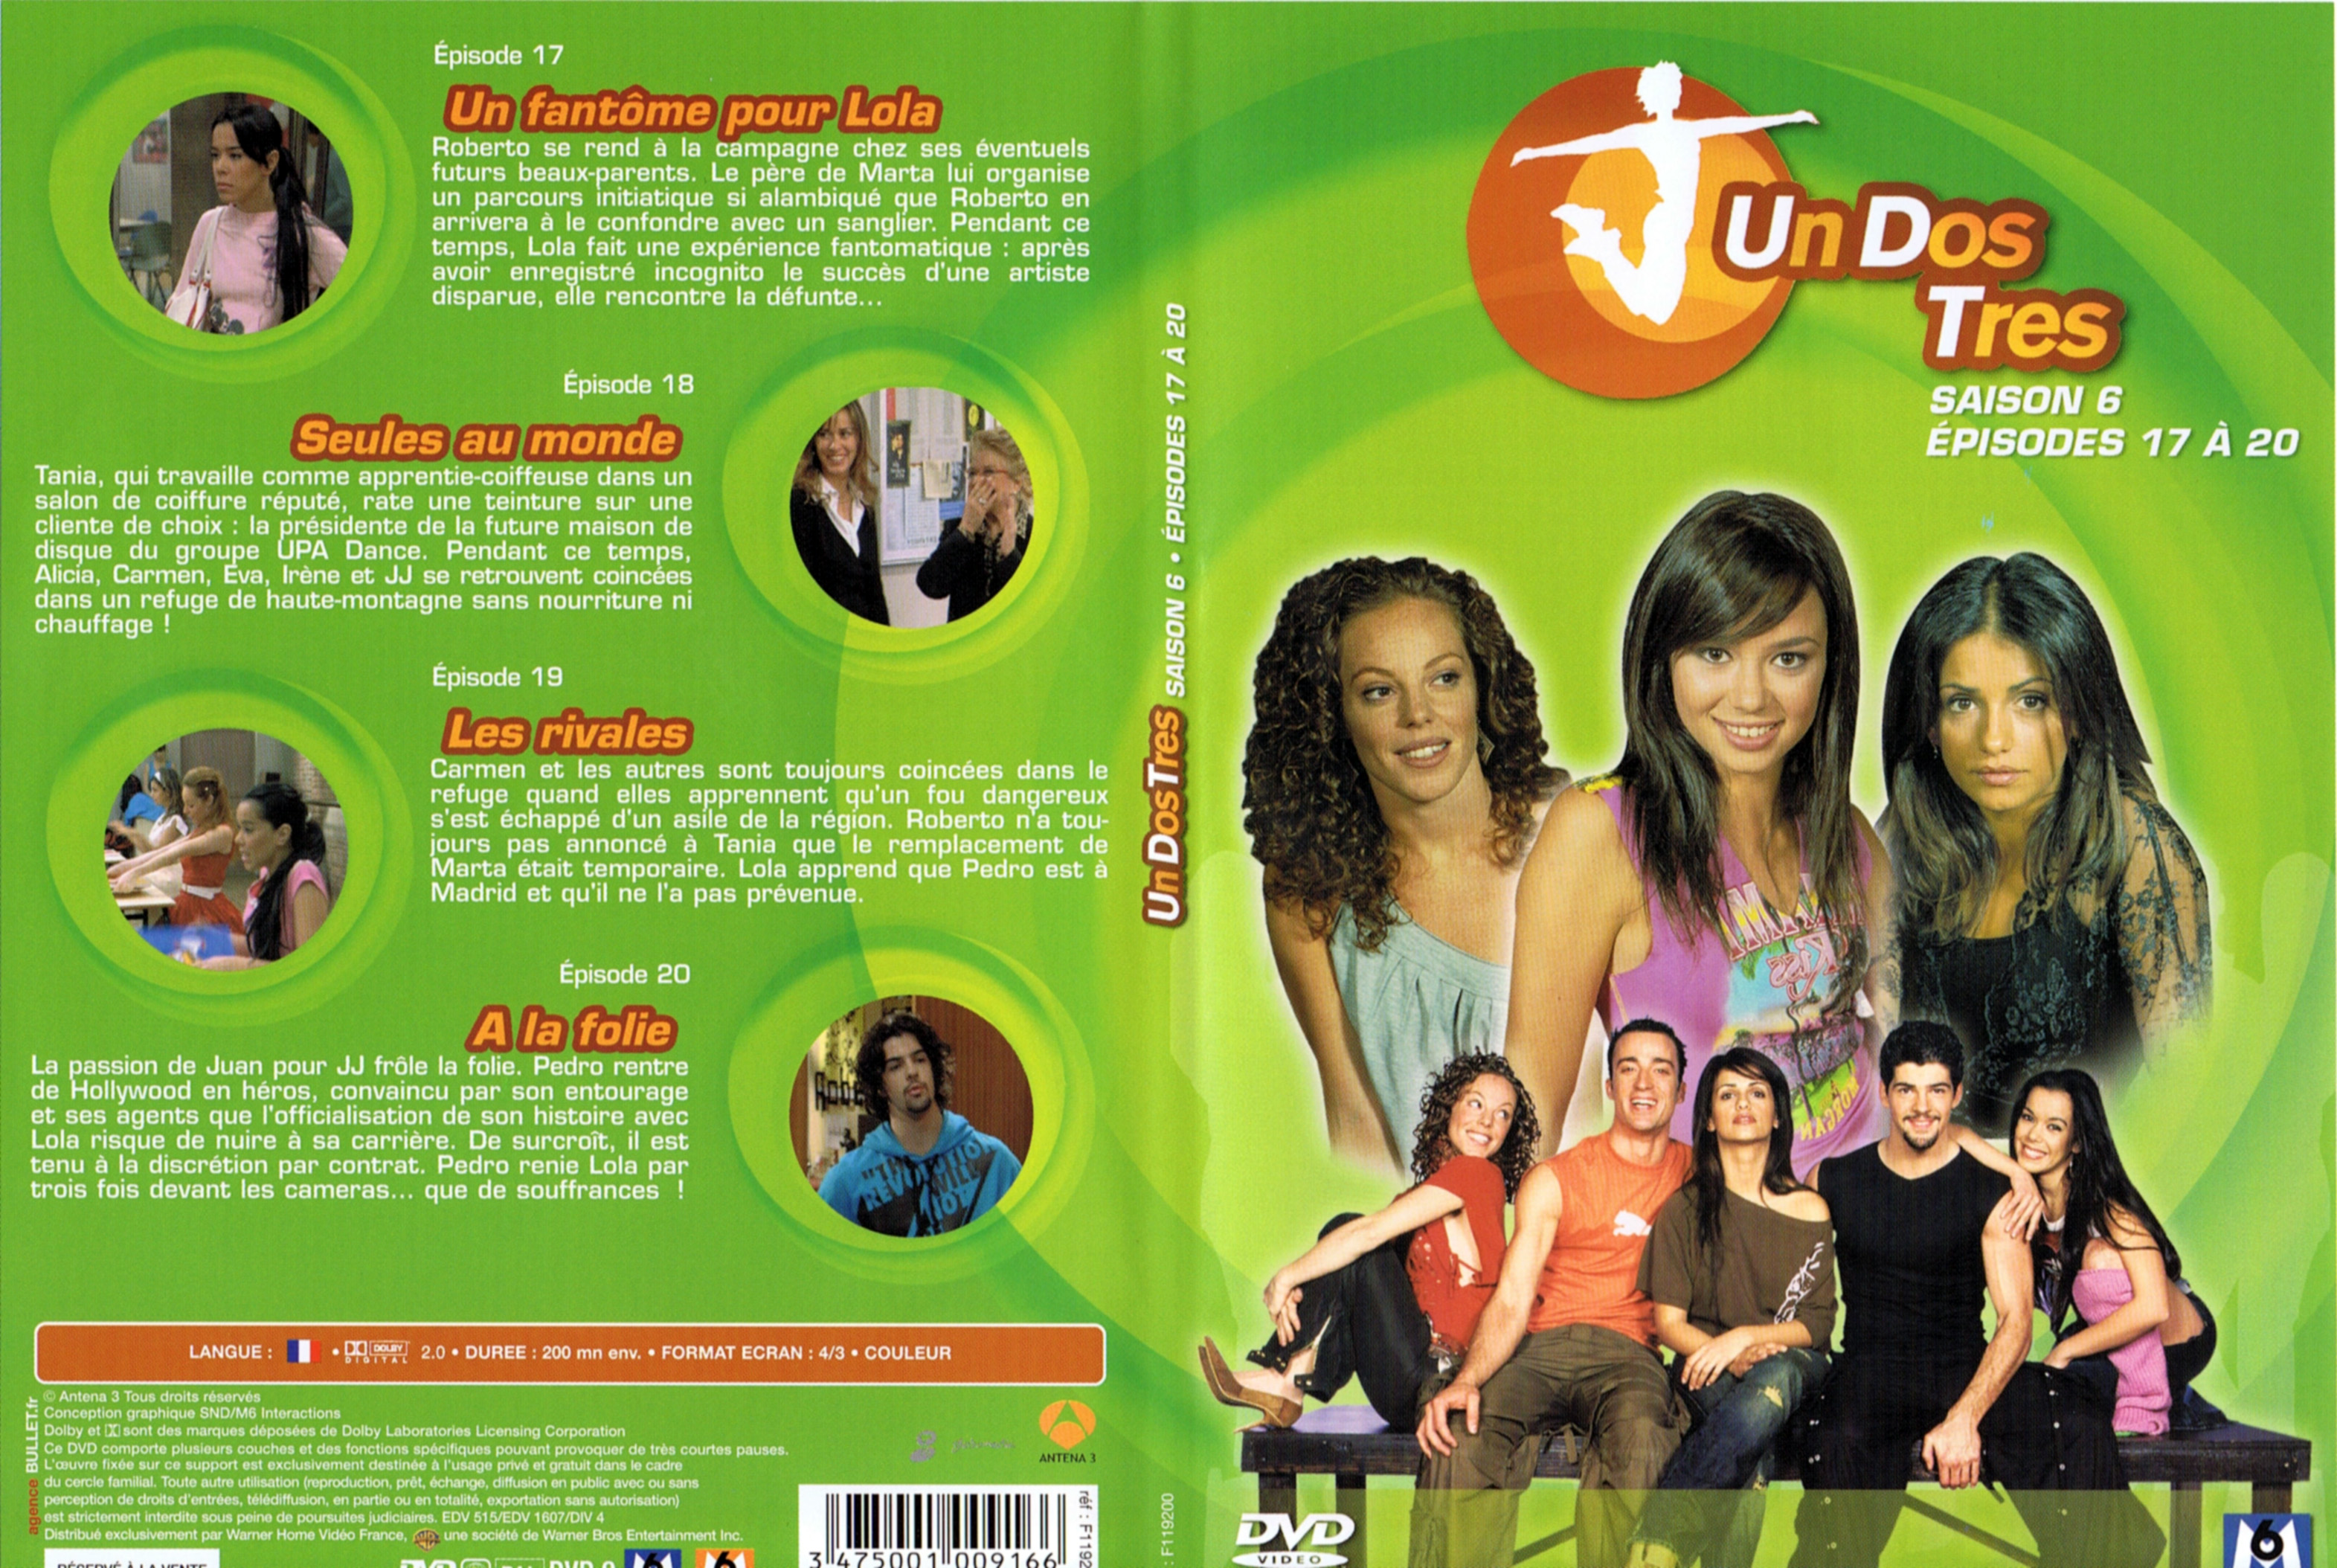 Jaquette DVD Un dos tres Saison 6 DVD 5